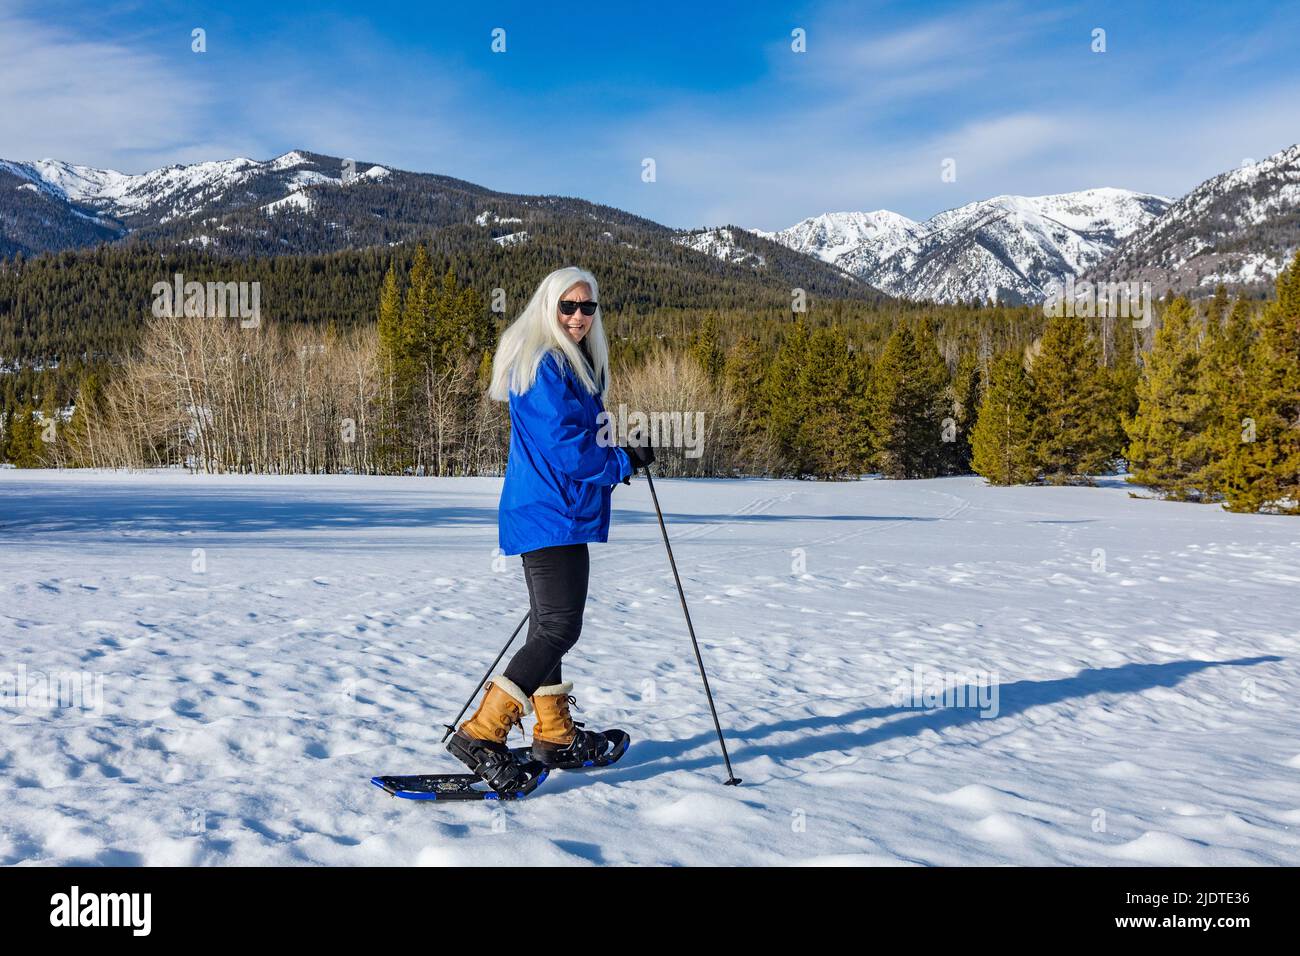 Etats-Unis, Idaho, Ketchum, Portrait de femme blonde senior en raquettes dans un paysage enneigé Banque D'Images